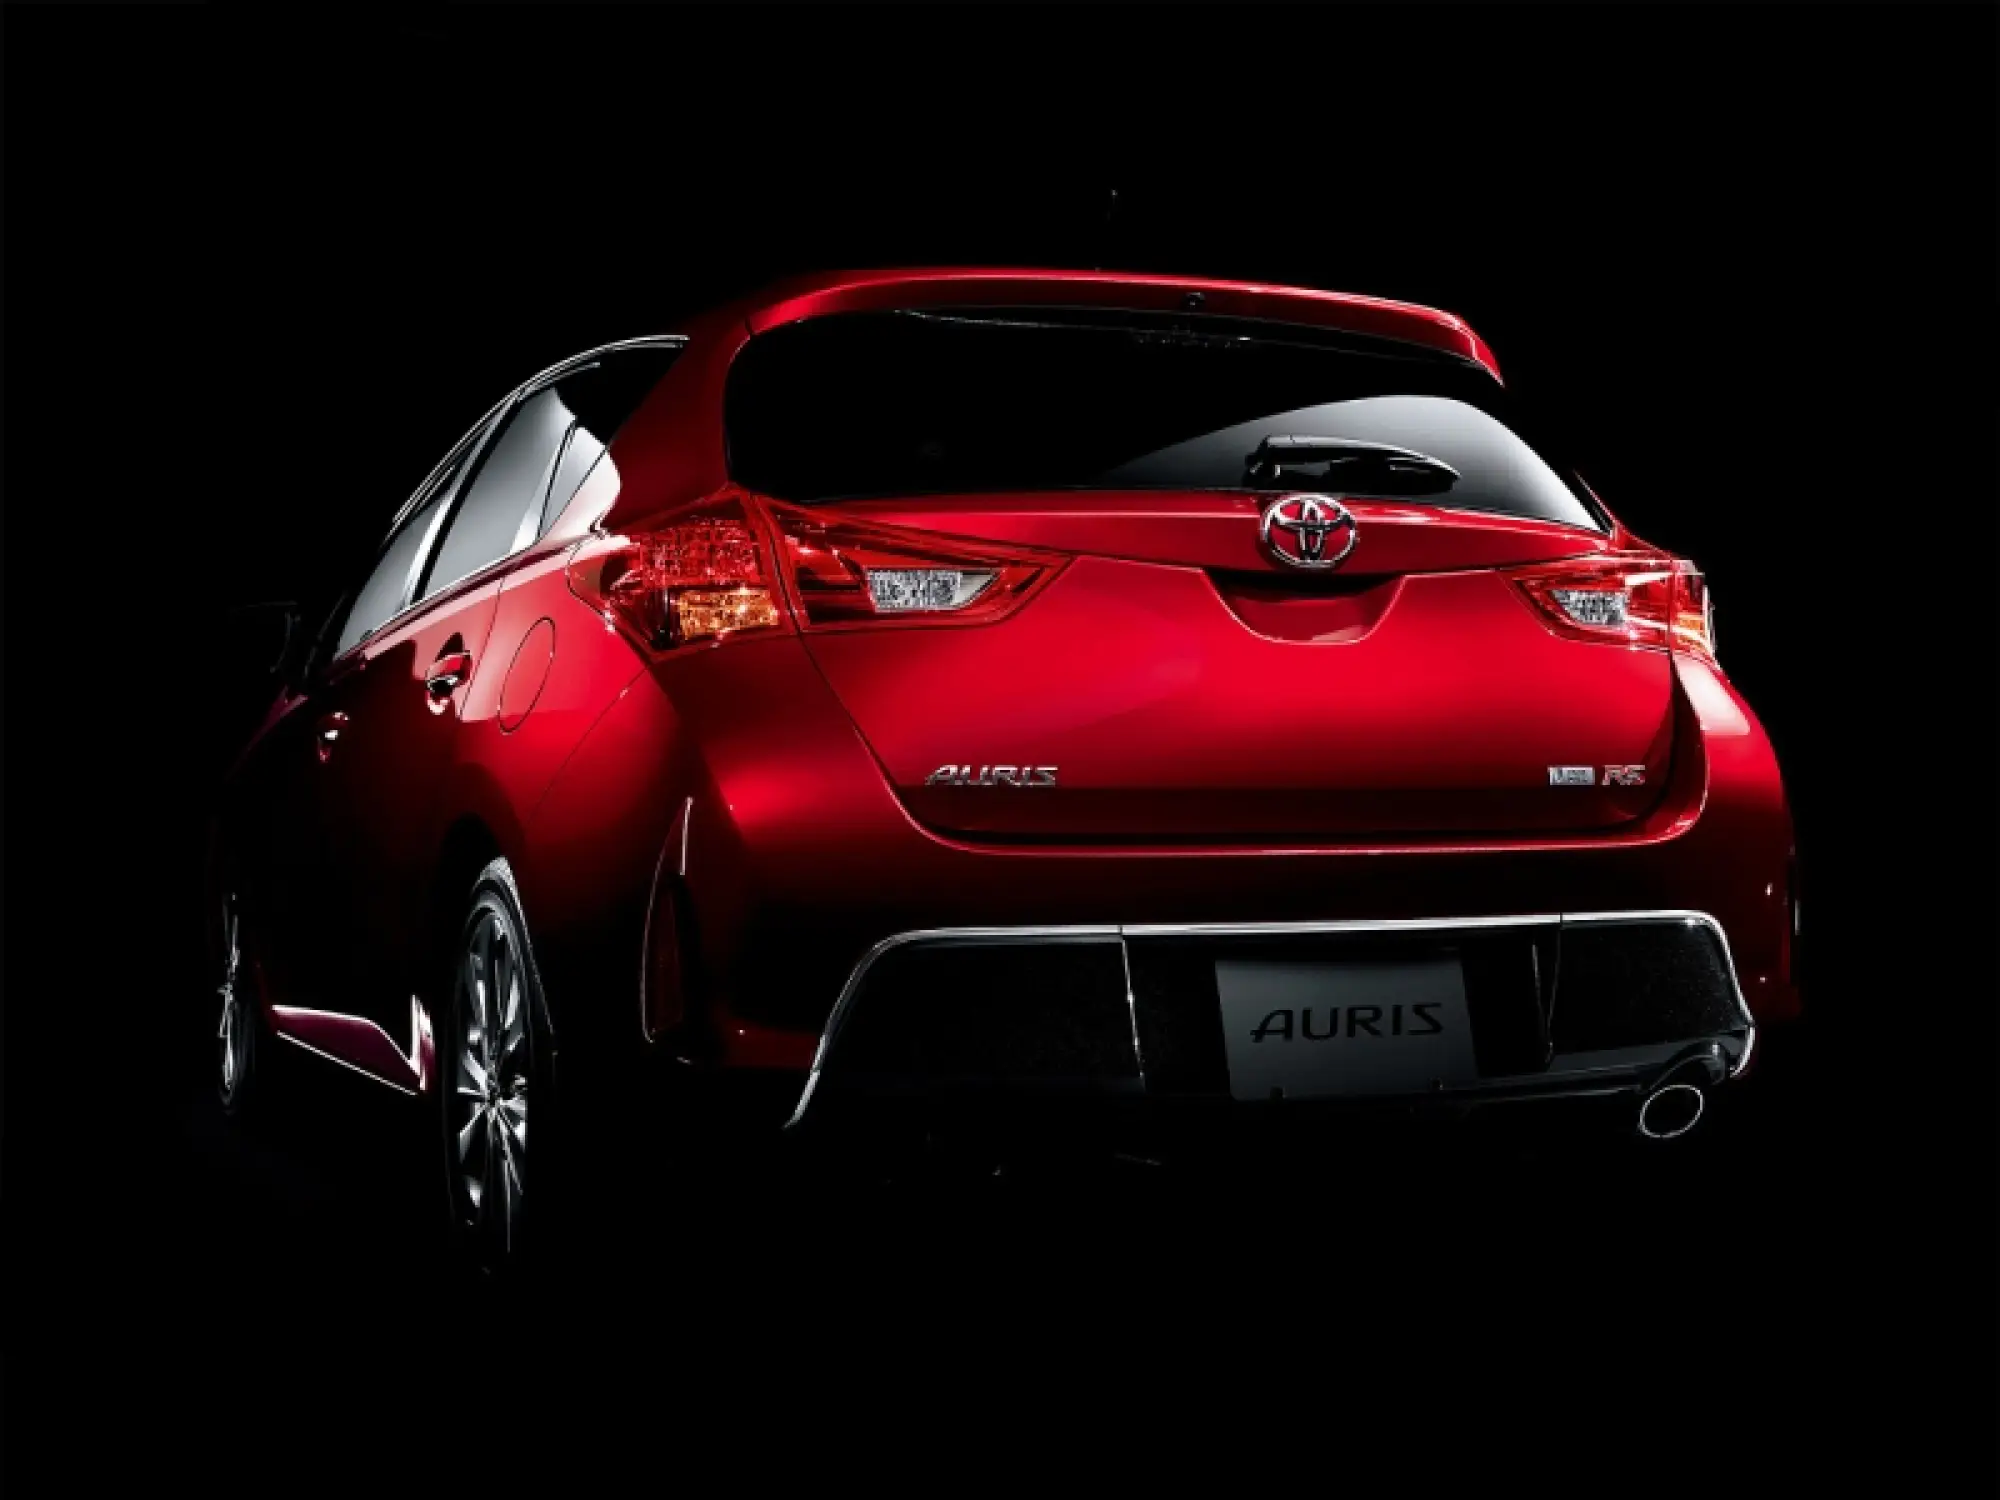 Toyota Auris 2013 foto ufficiali - 8